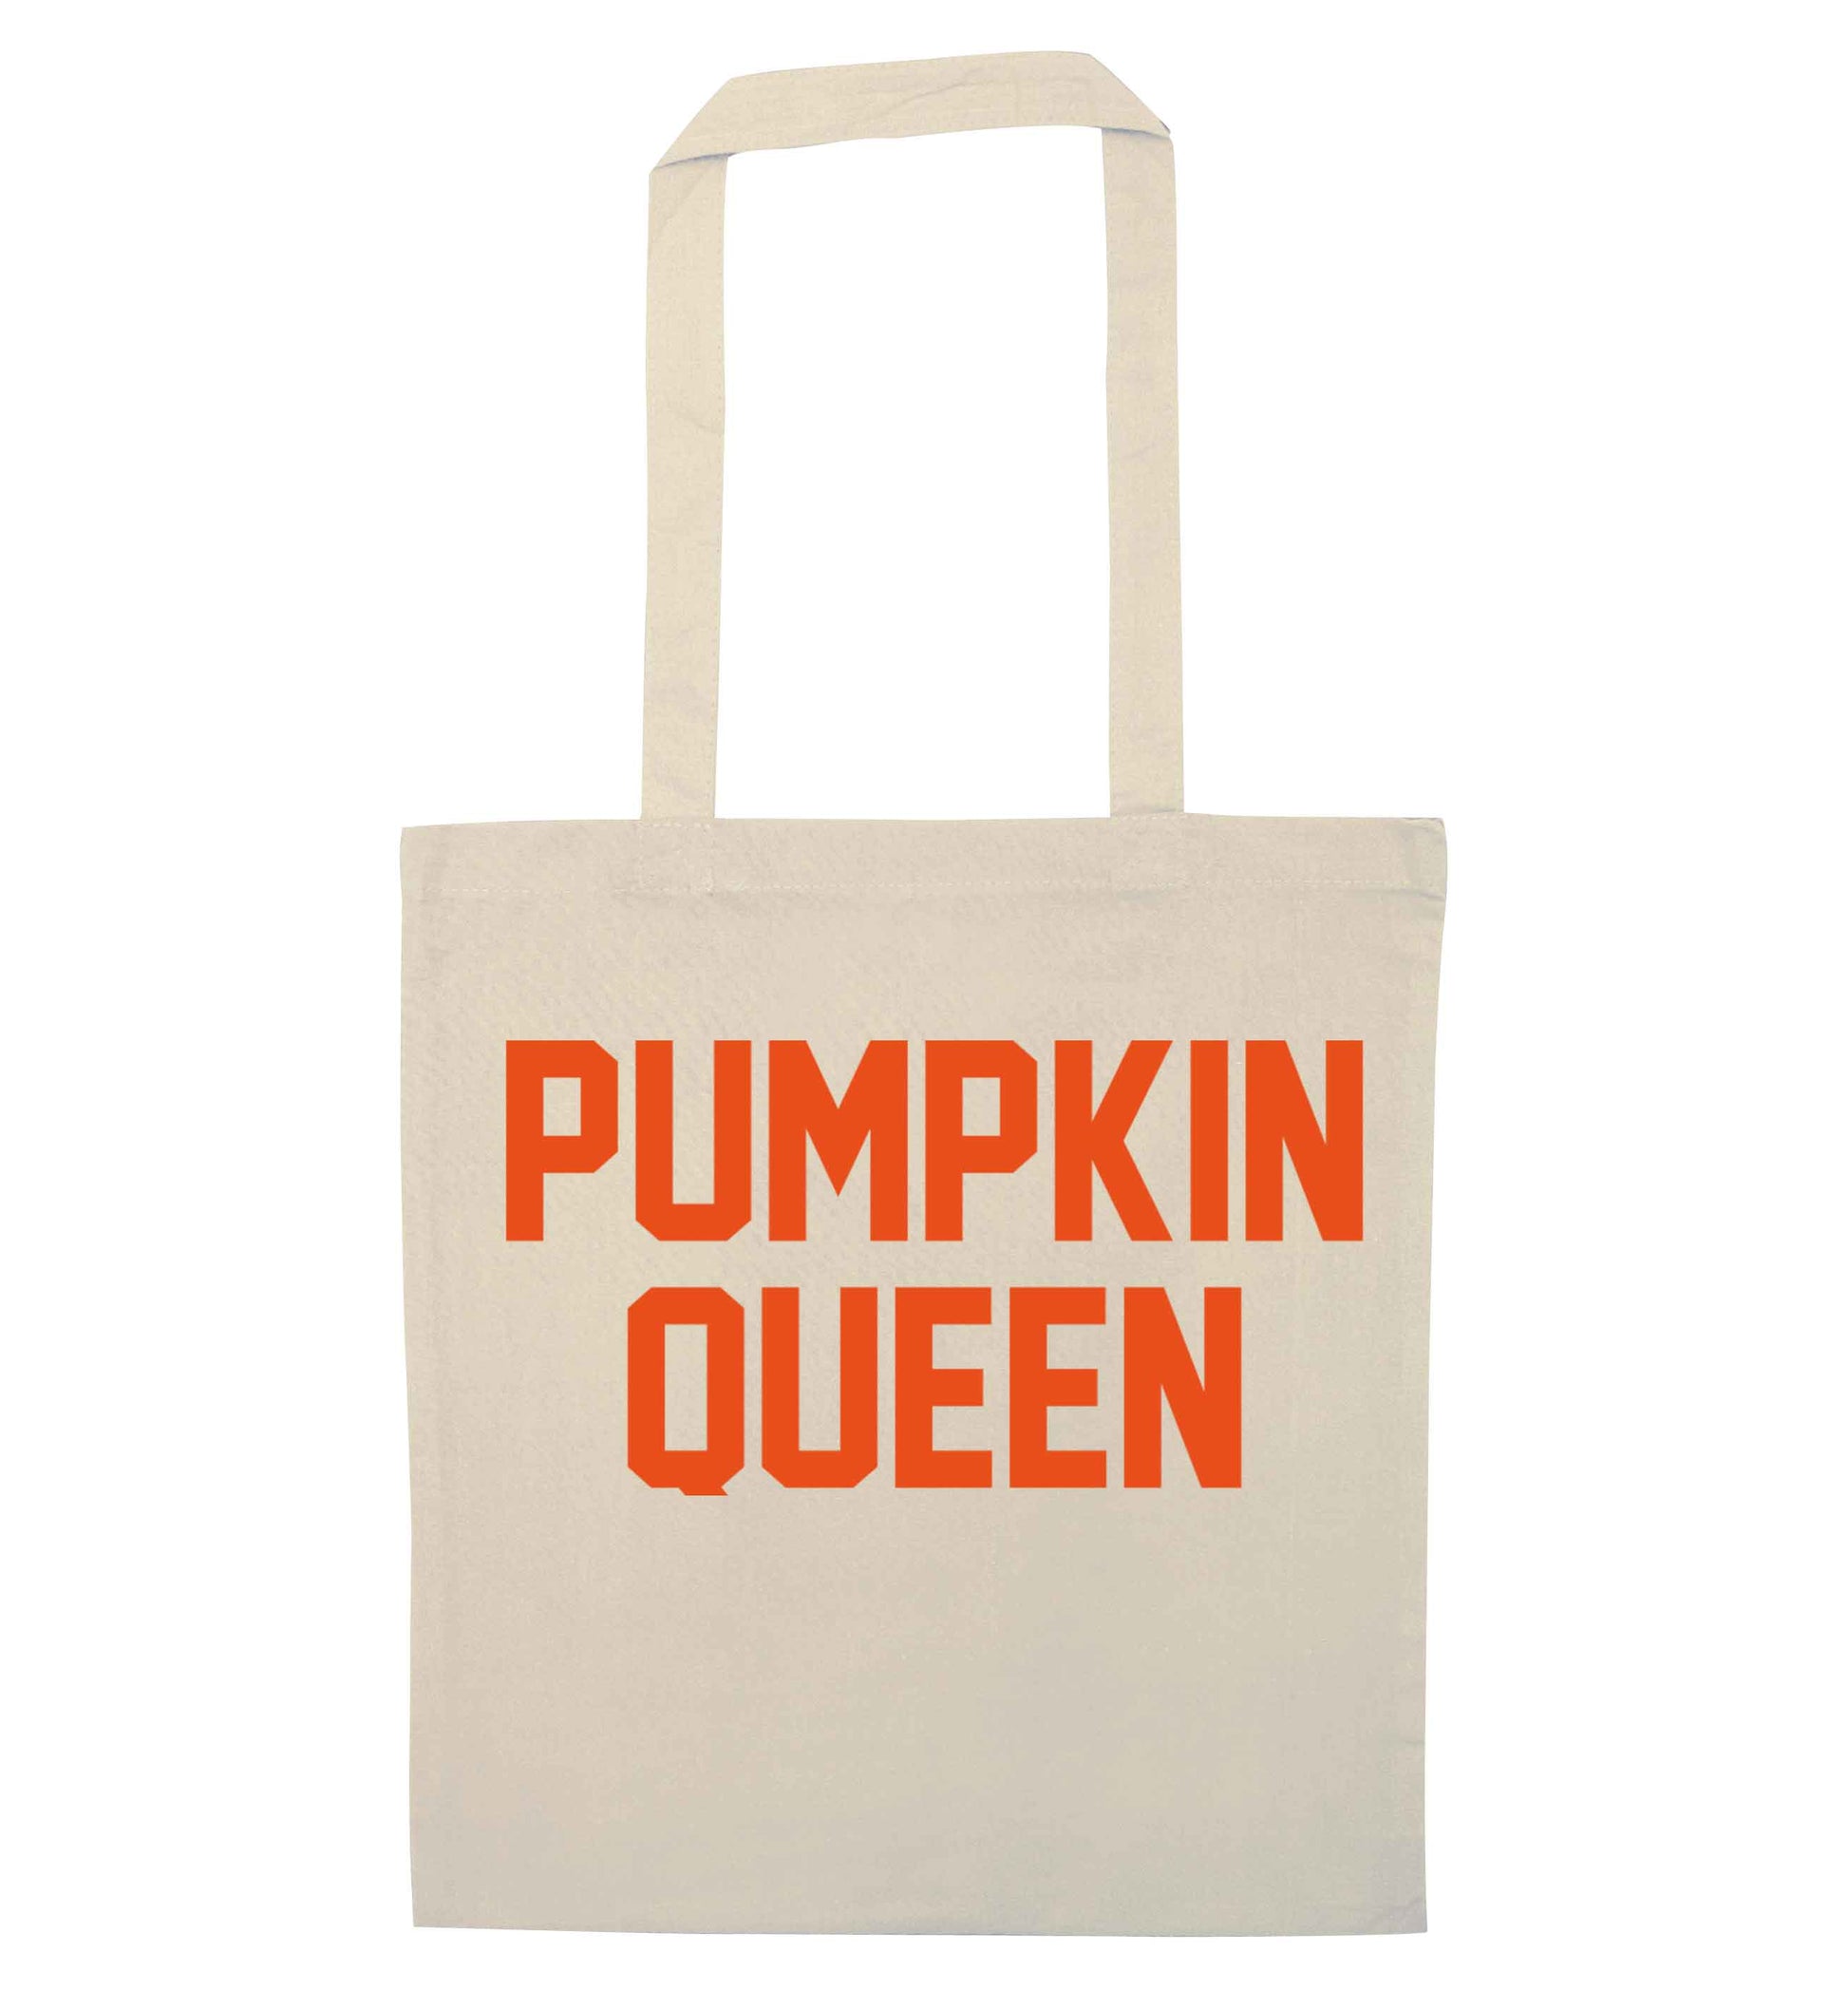 Pumpkin Queen natural tote bag